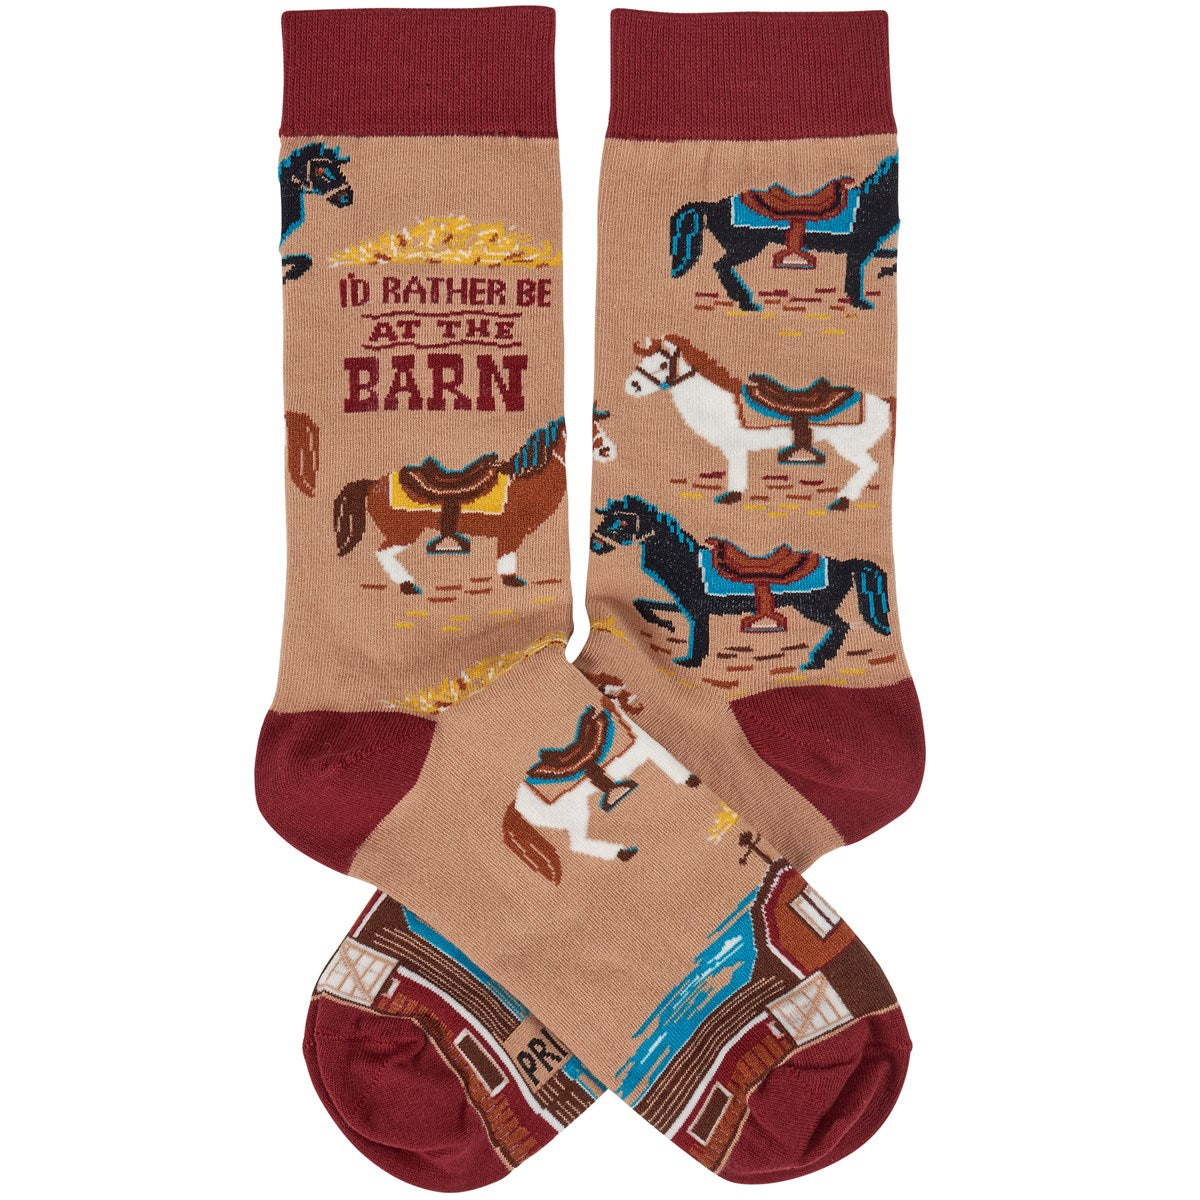 Be At The Barn Socks